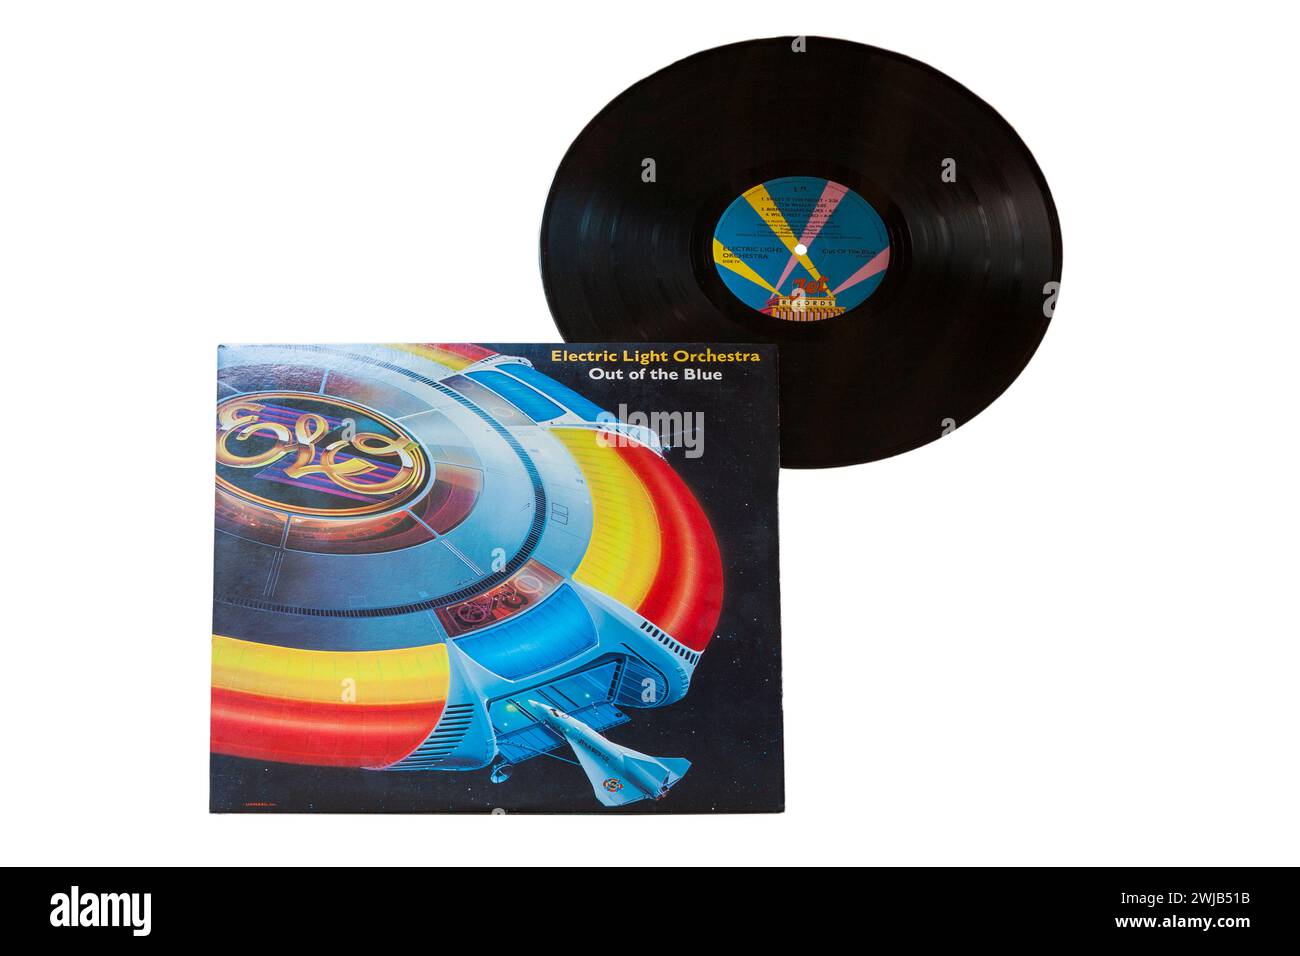 Electric Light Orchestra ELO Out of the Blue vinyle album LP couverture isolée sur fond blanc - 1977 Banque D'Images